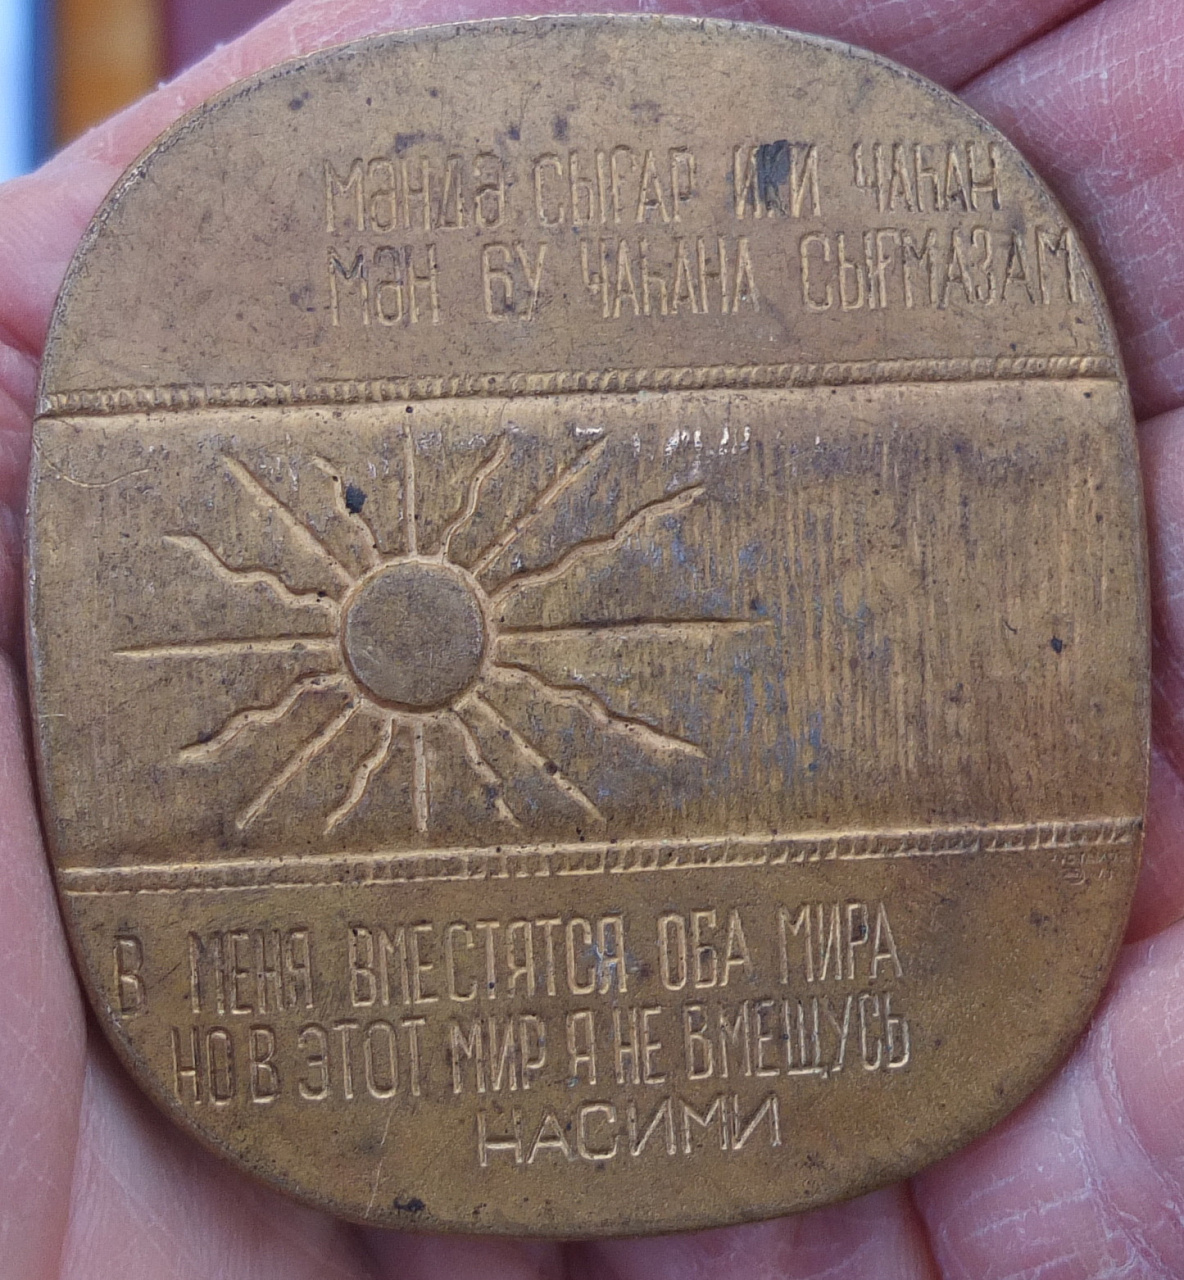 Настольная медаль. Петрополис настольная медаль. Бронзовая настольная медаль бумажная фабрика. 600 лет жили